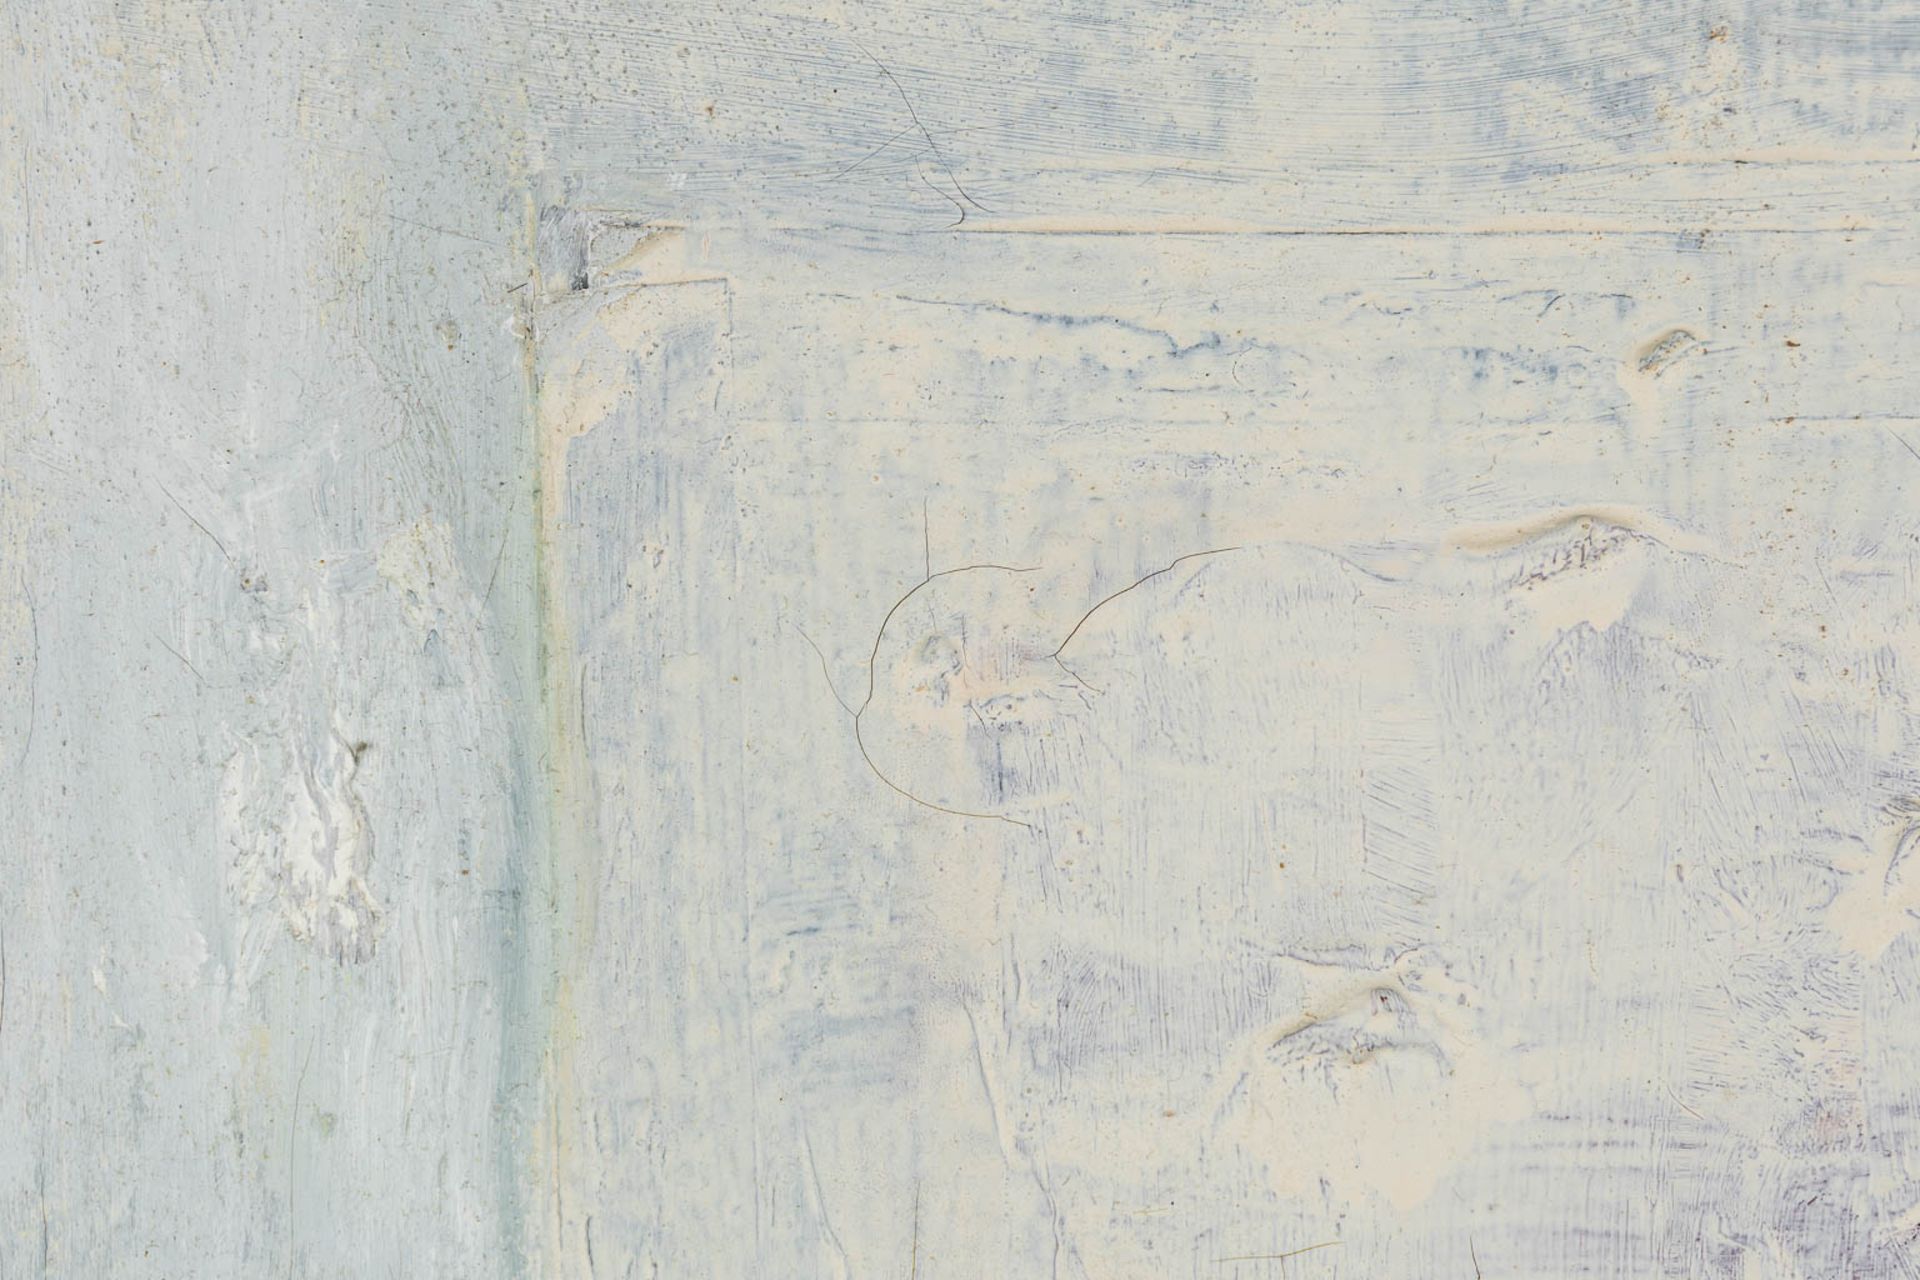 Huguette VAN DEN KIEBOOM (1931 - 2019) 'Abstract Wit' oil on canvas. (W:60 x H:70 cm) - Image 9 of 9